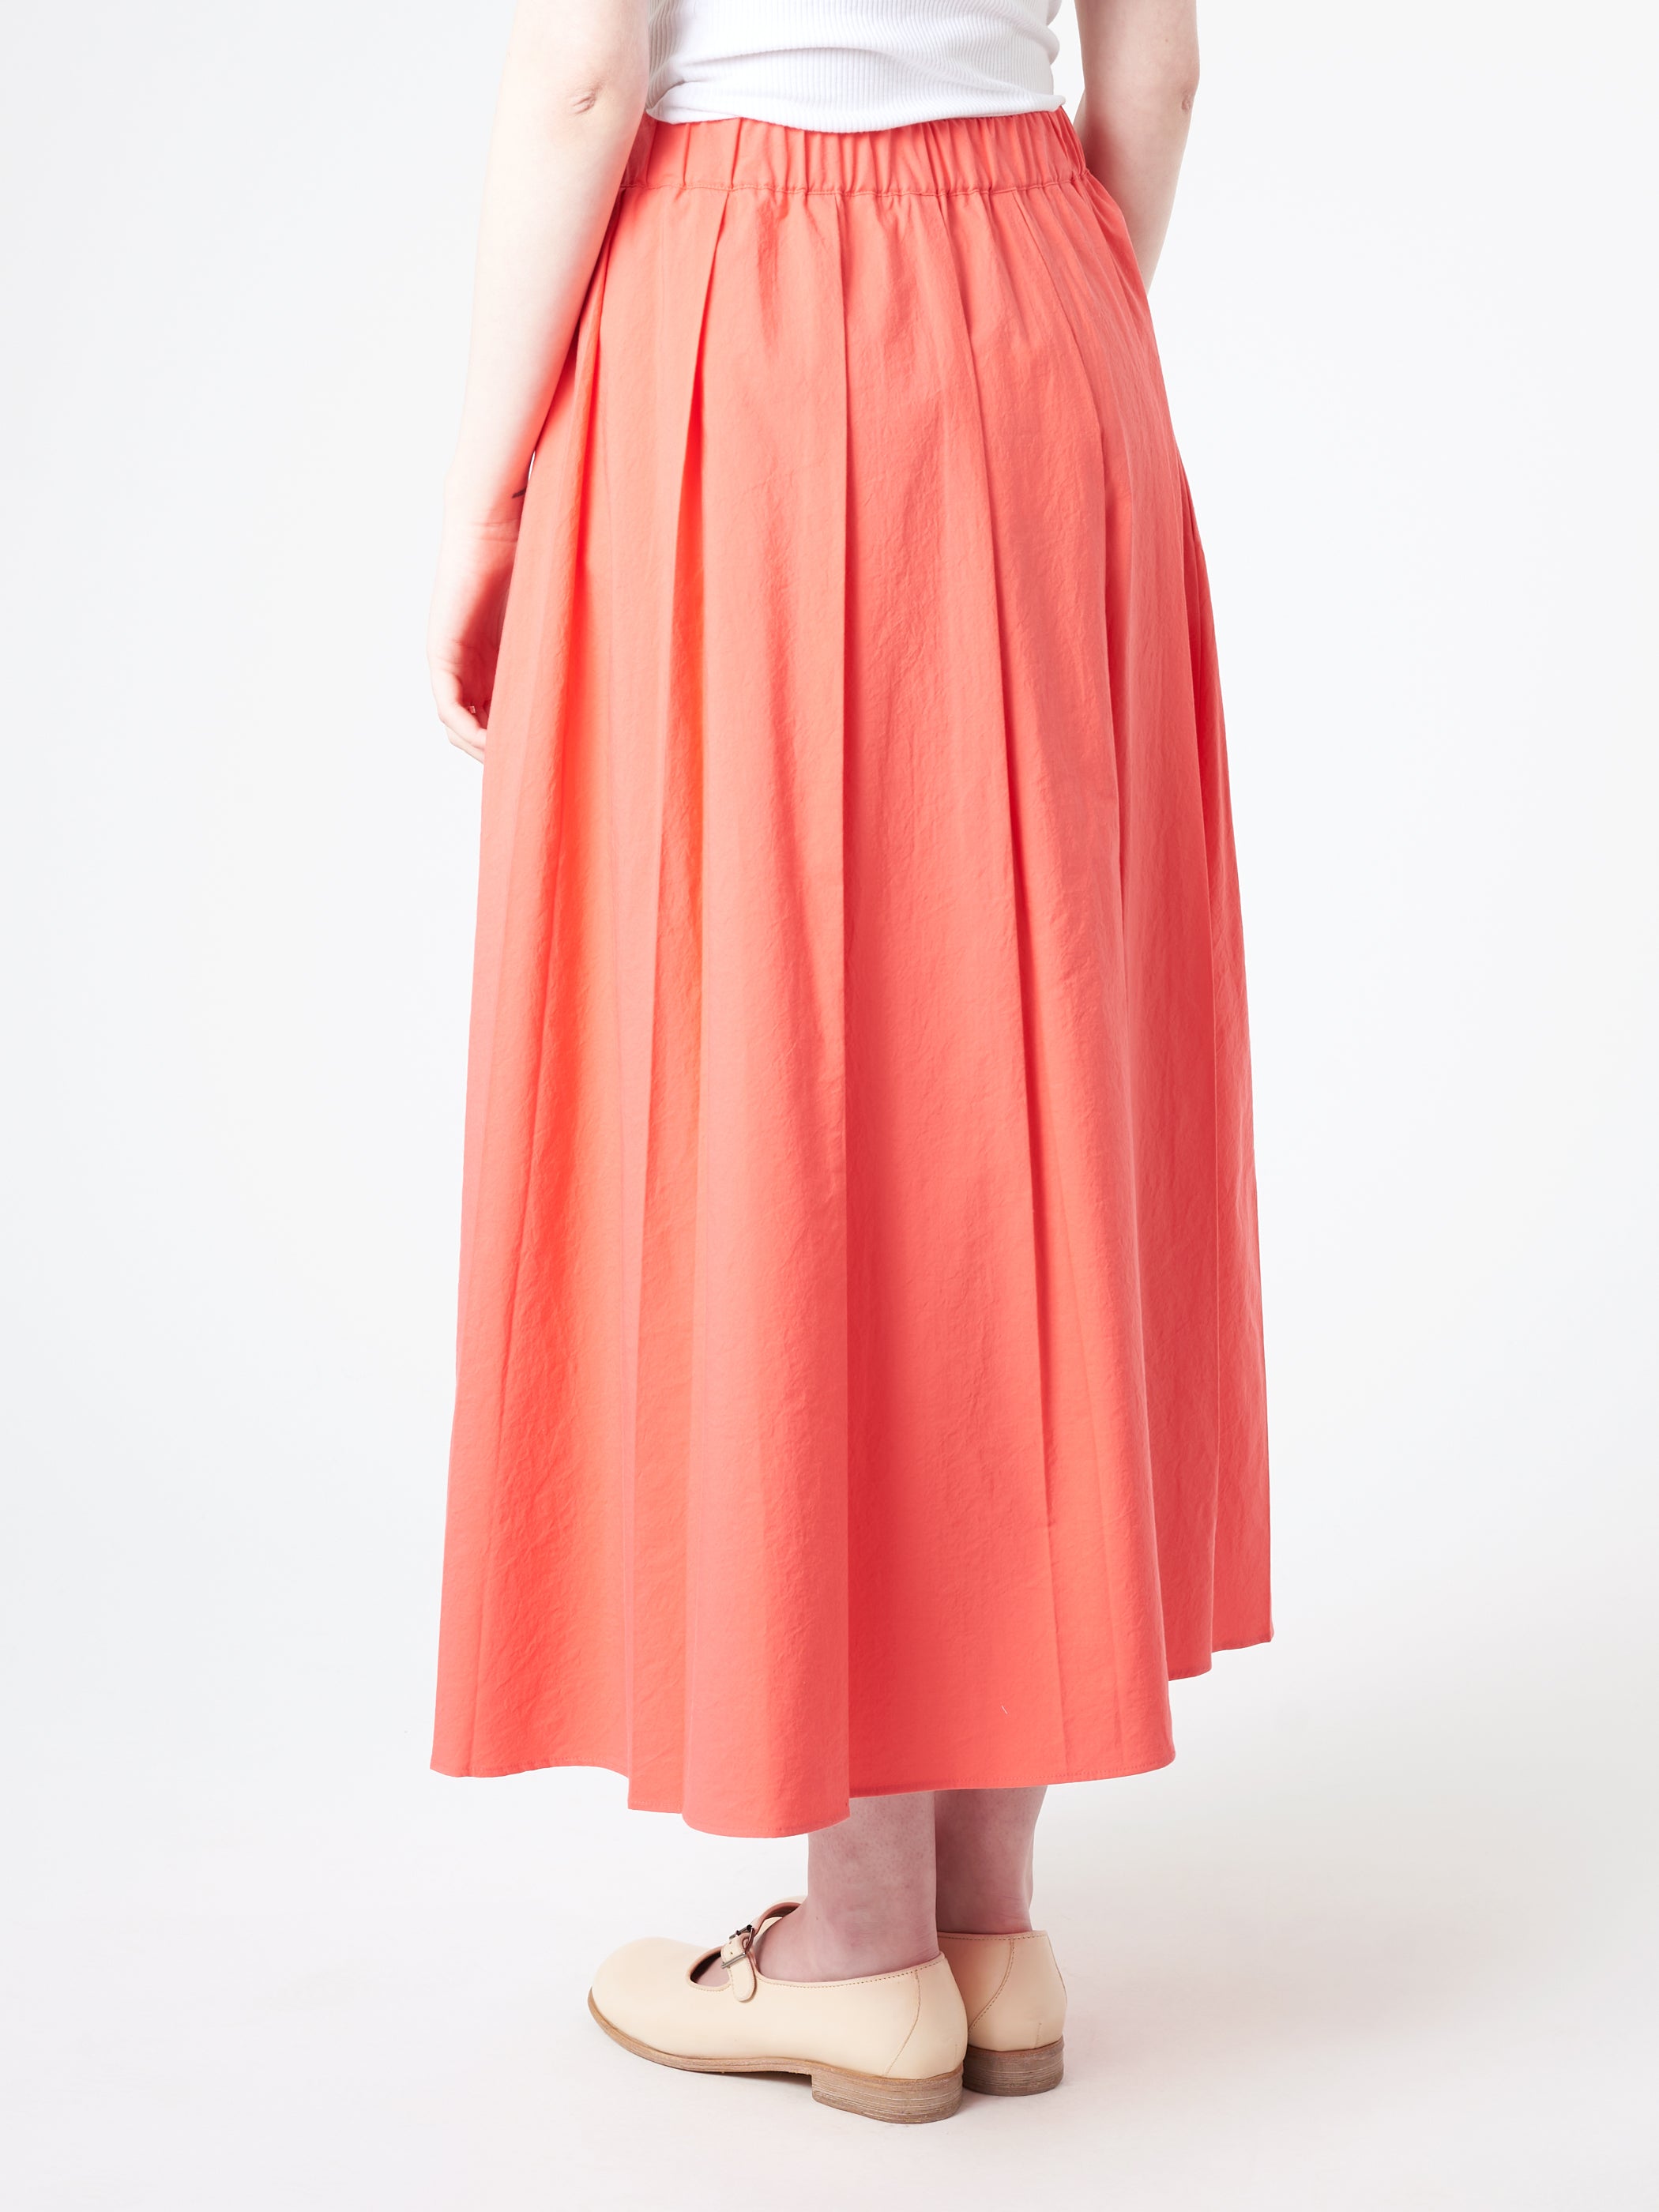 P1851 Skirt